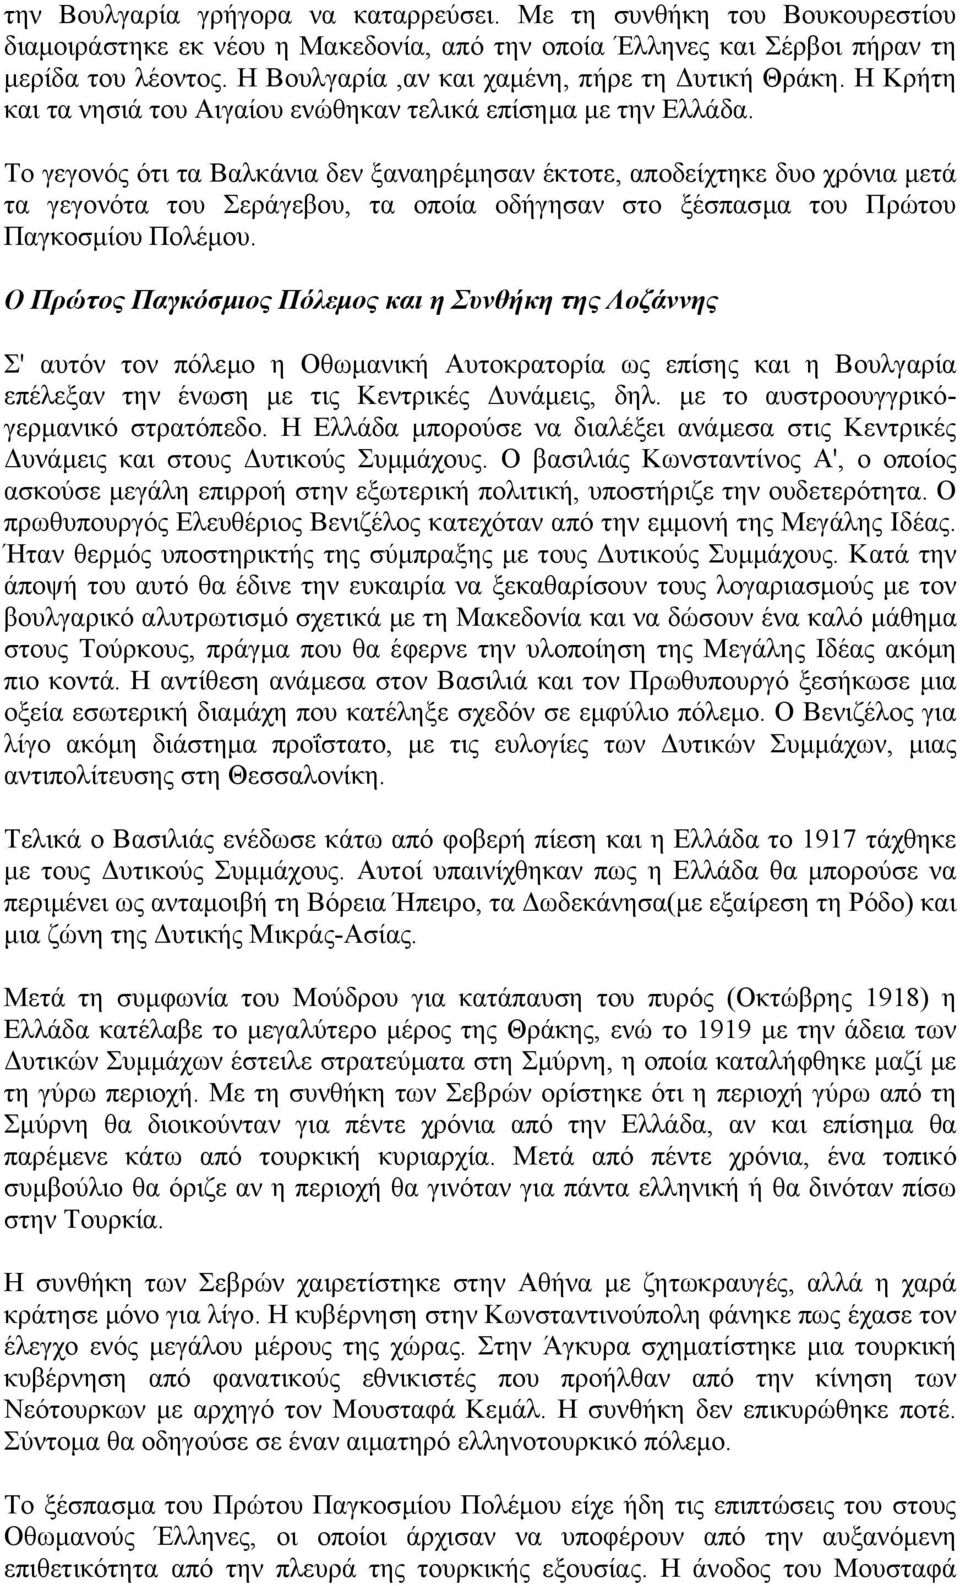 Το γεγονός ότι τα Βαλκάνια δεν ξαναηρέµησαν έκτοτε, αποδείχτηκε δυο χρόνια µετά τα γεγονότα του Σεράγεβου, τα οποία οδήγησαν στο ξέσπασµα του Πρώτου Παγκοσµίου Πολέµου.